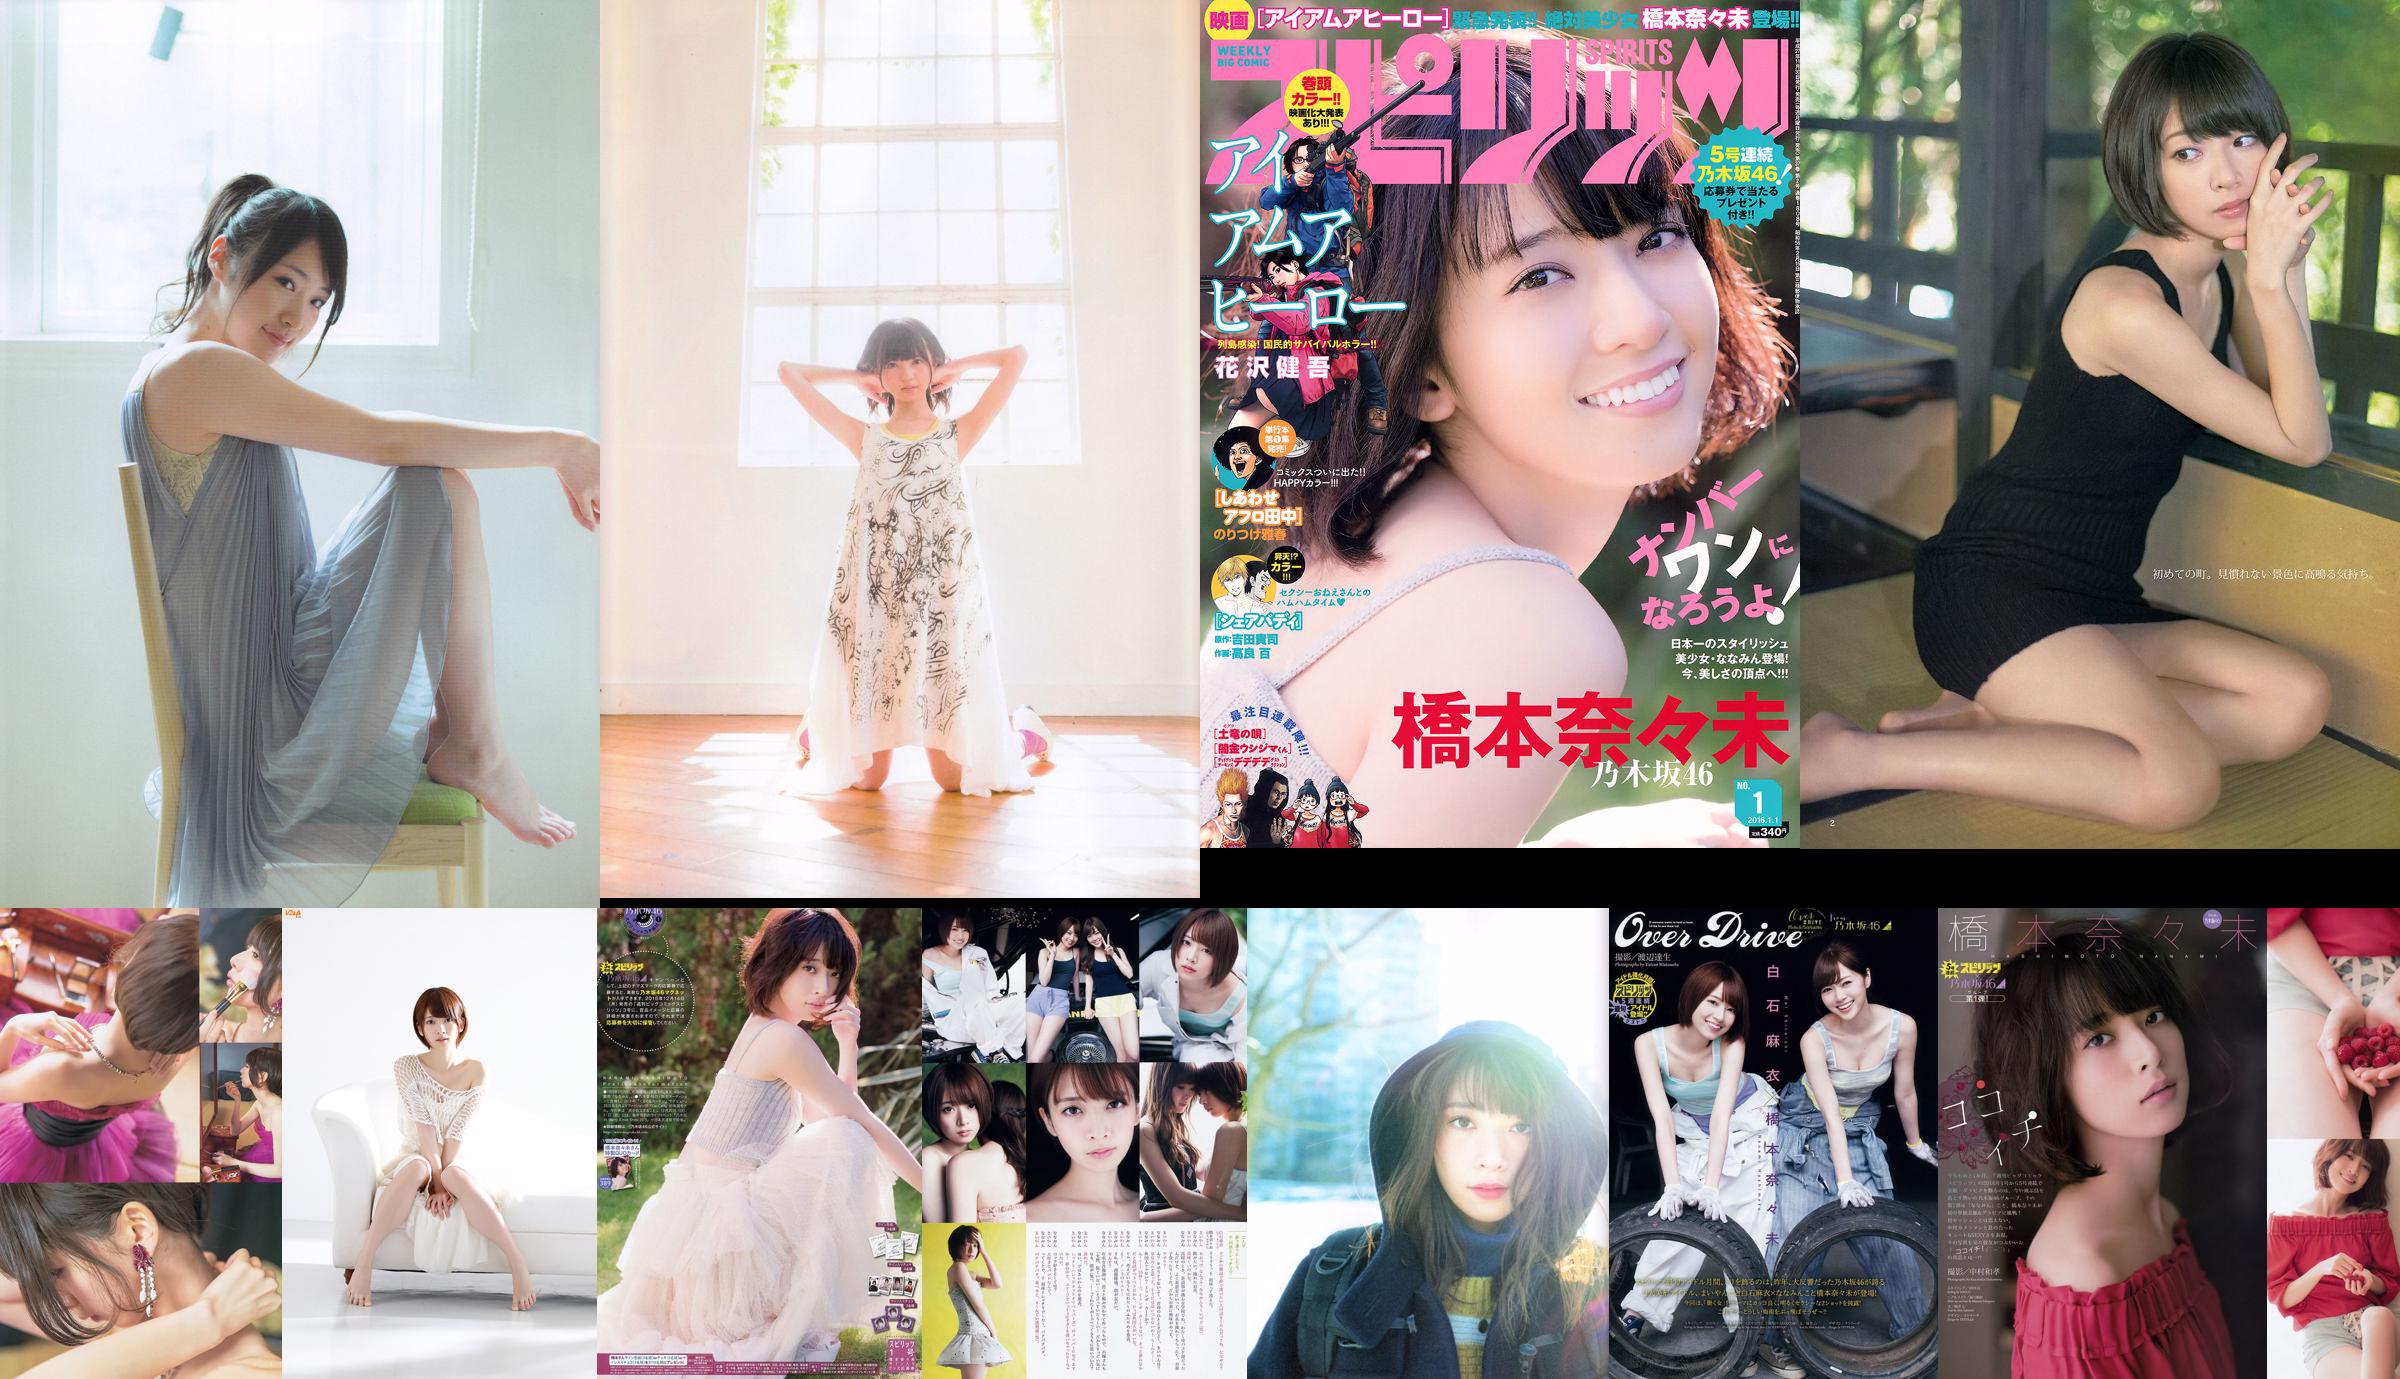 Nanami Hashimoto (Nogizaka 46 member) [Bomb.TV] June 2013 No.66cbae Page 1